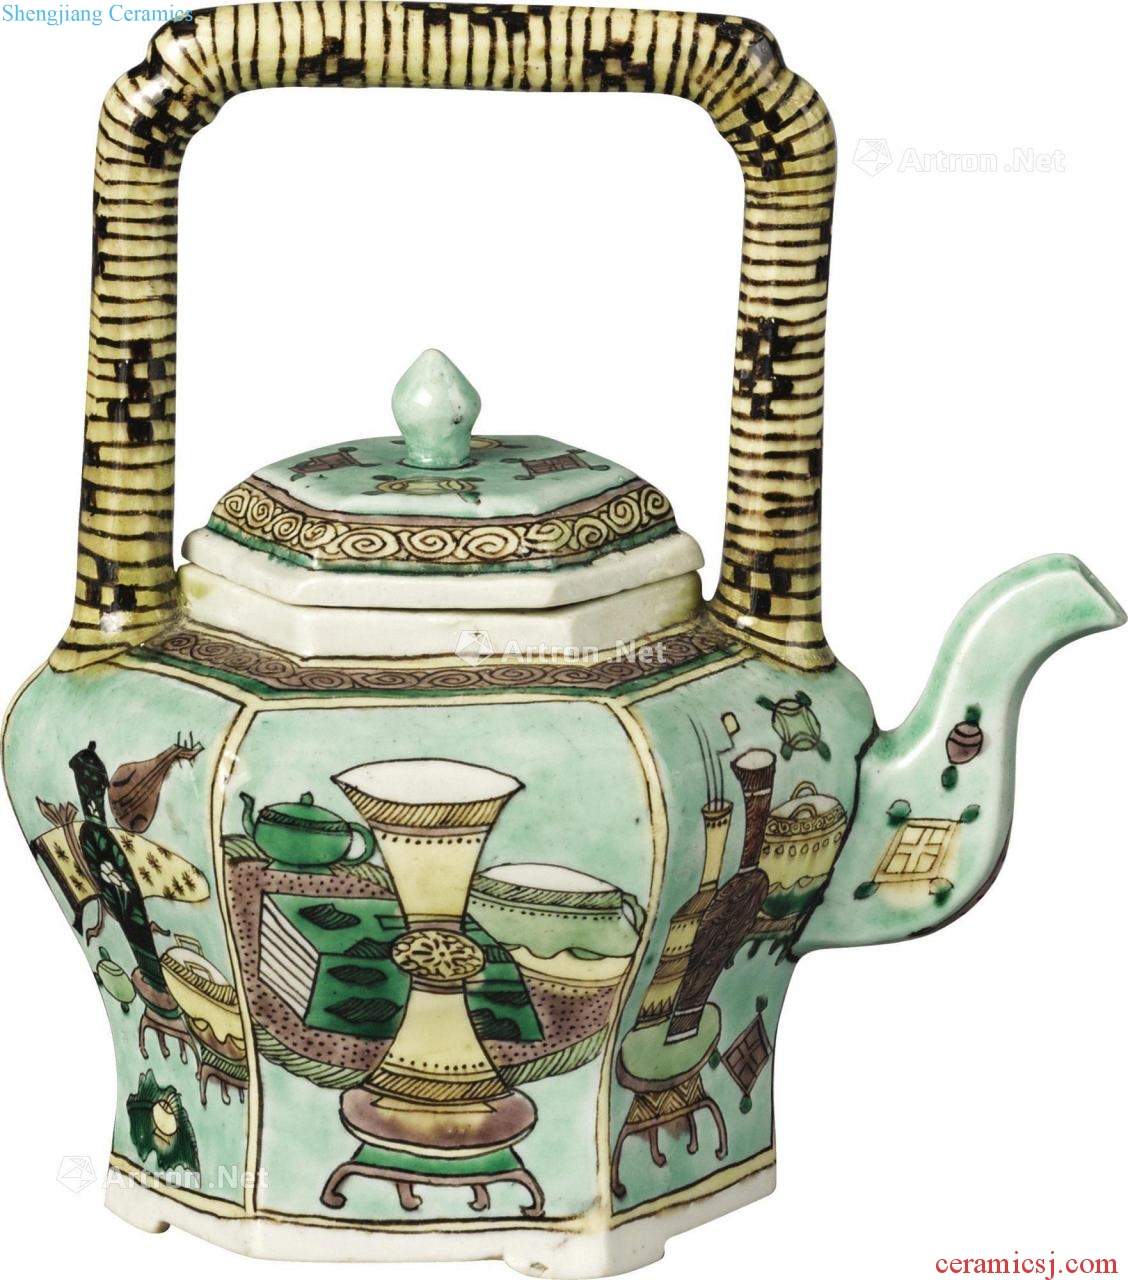 The qing emperor kangxi plain tricolour antique figure the six-party girder pot